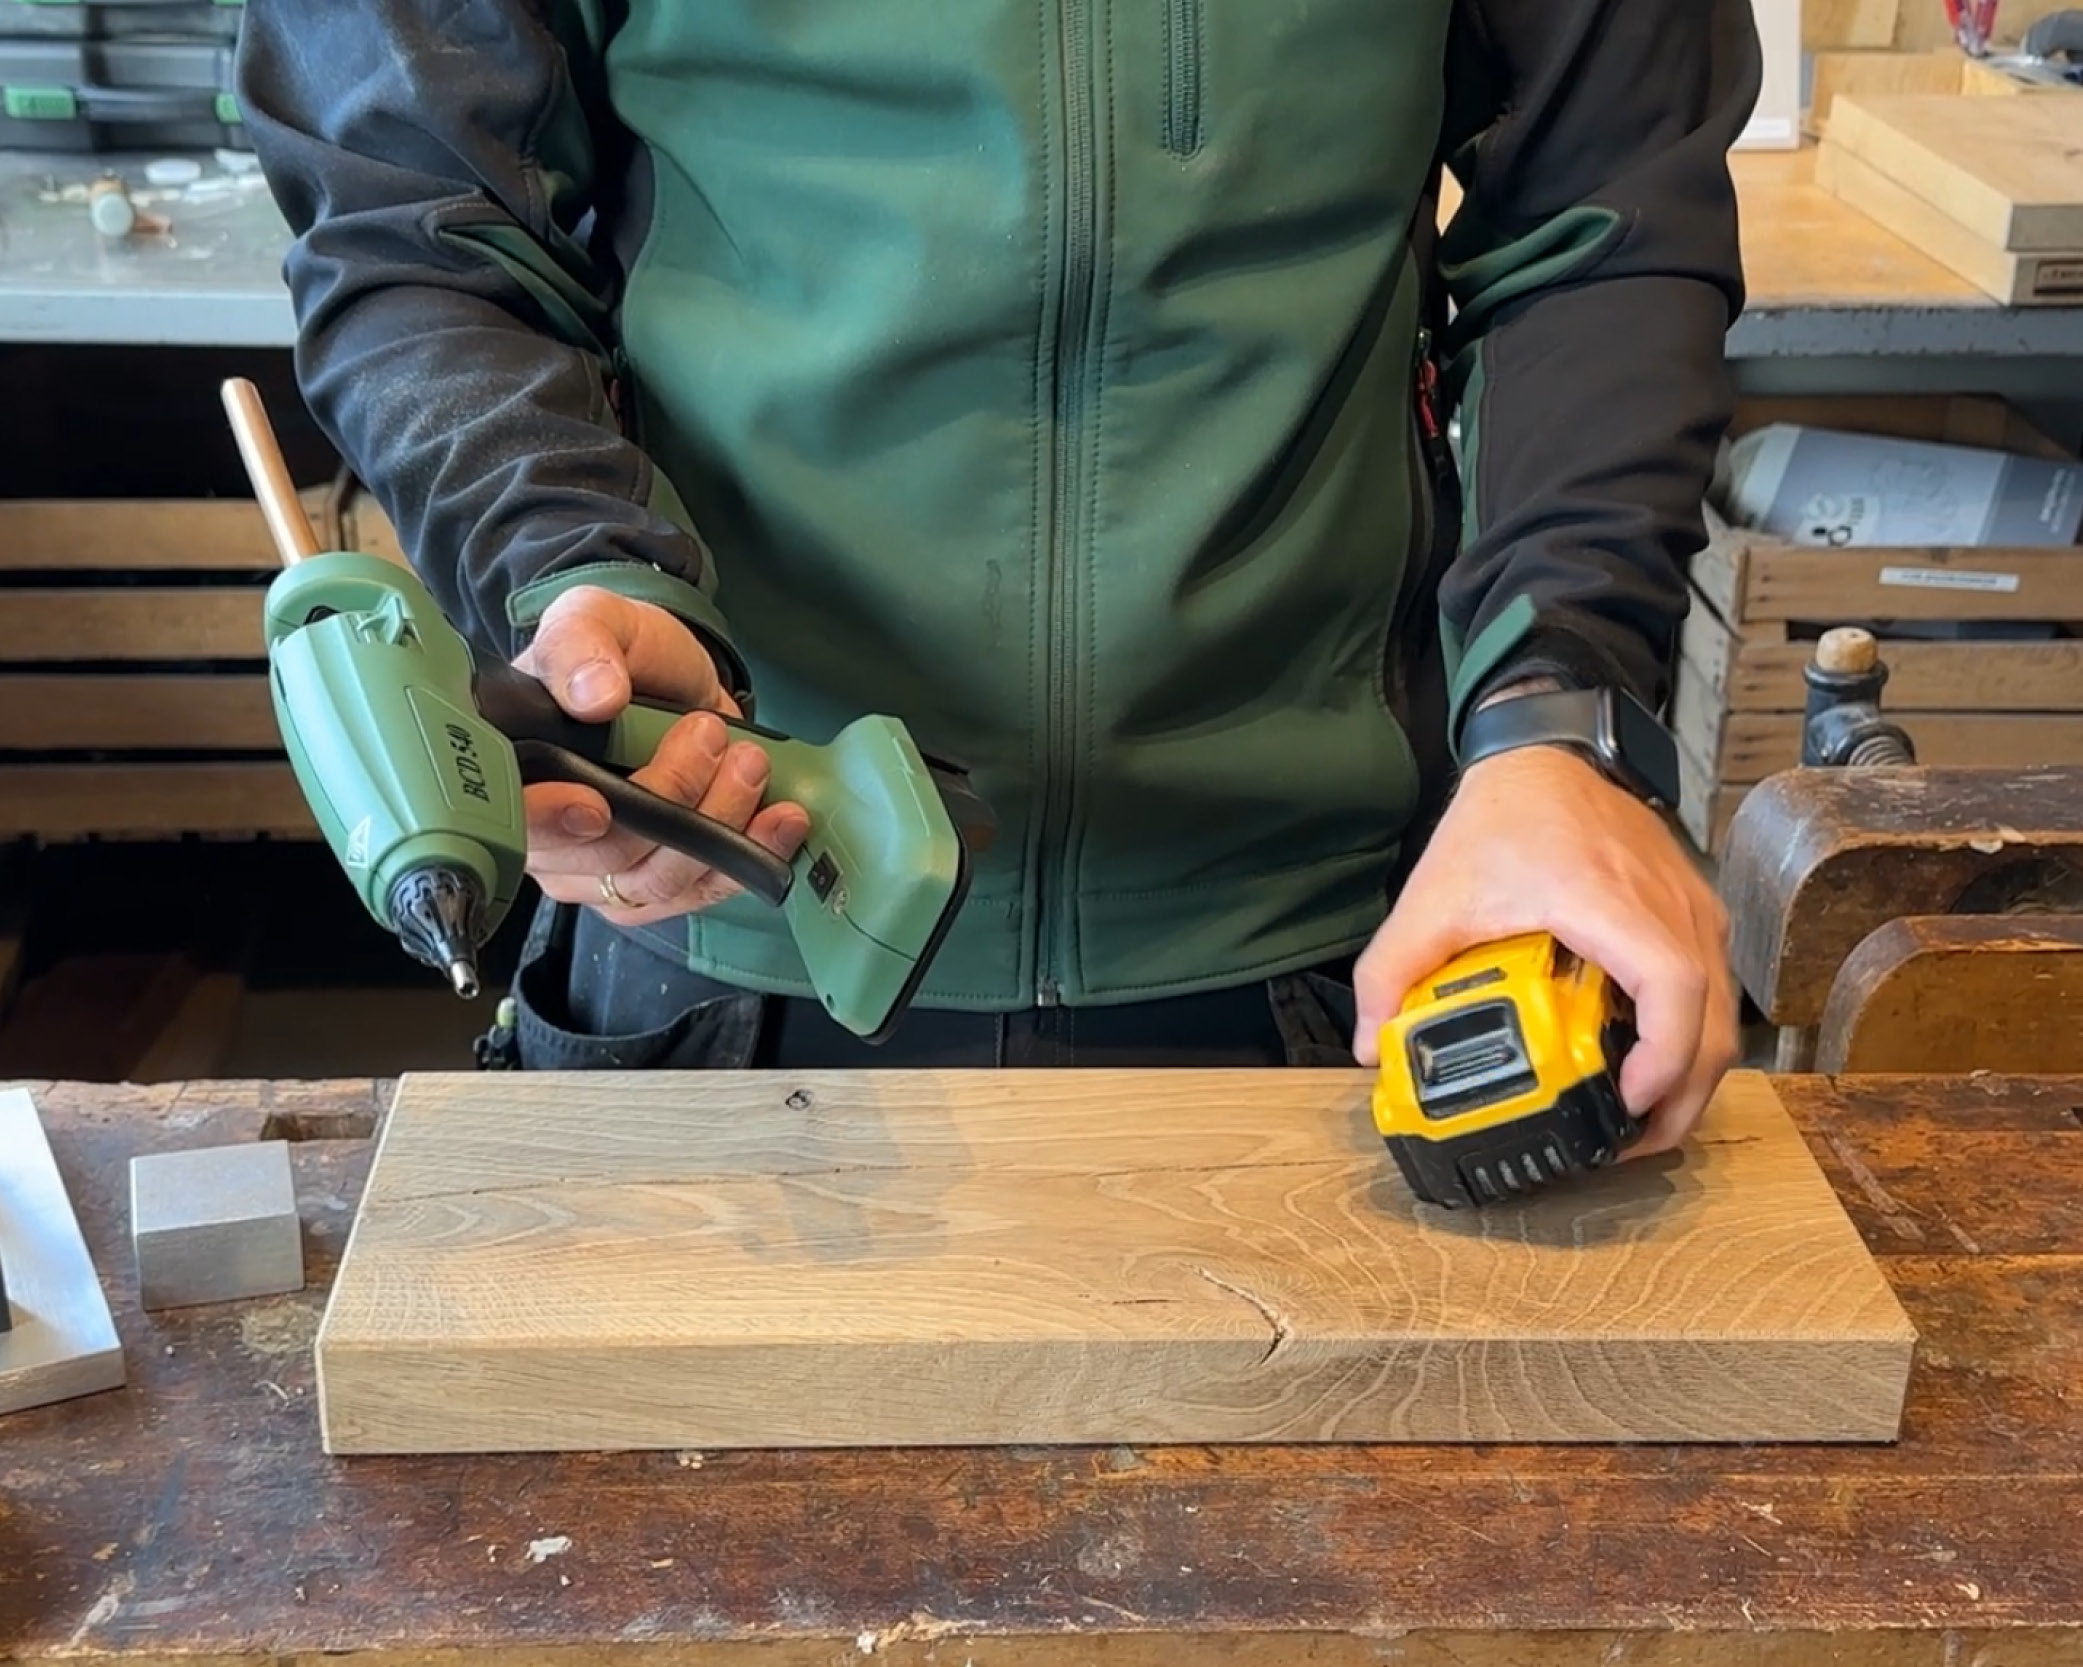 Basic Wood Repair heating gun for Knot Filler repairs